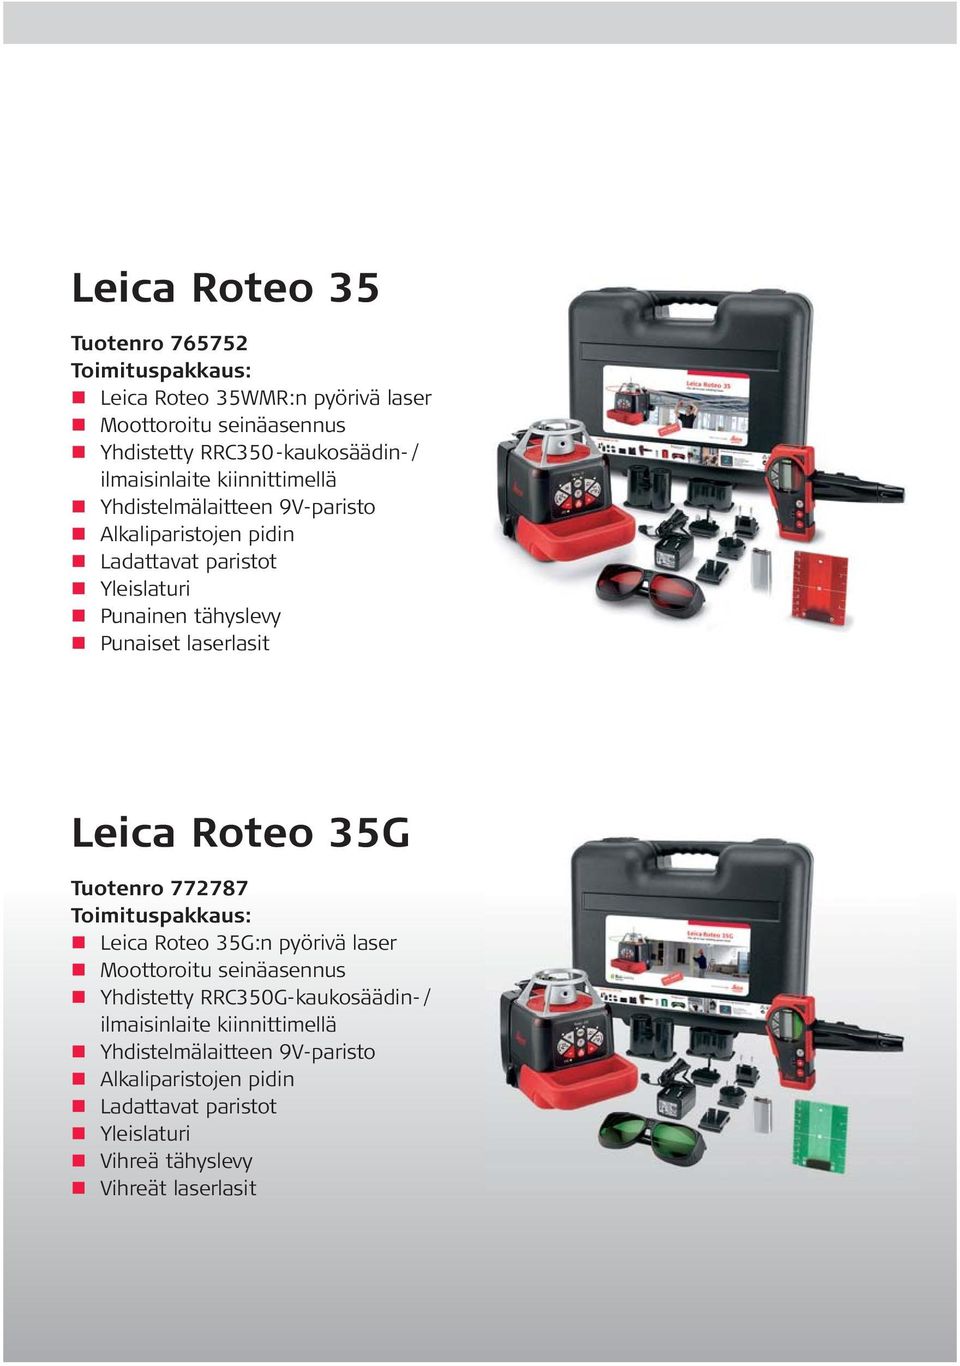 laserlasit Leica Roteo 35G Tuotenro 772787 Toimituspakkaus: Leica Roteo 35G:n pyörivä laser Moottoroitu seinäasennus Yhdistetty